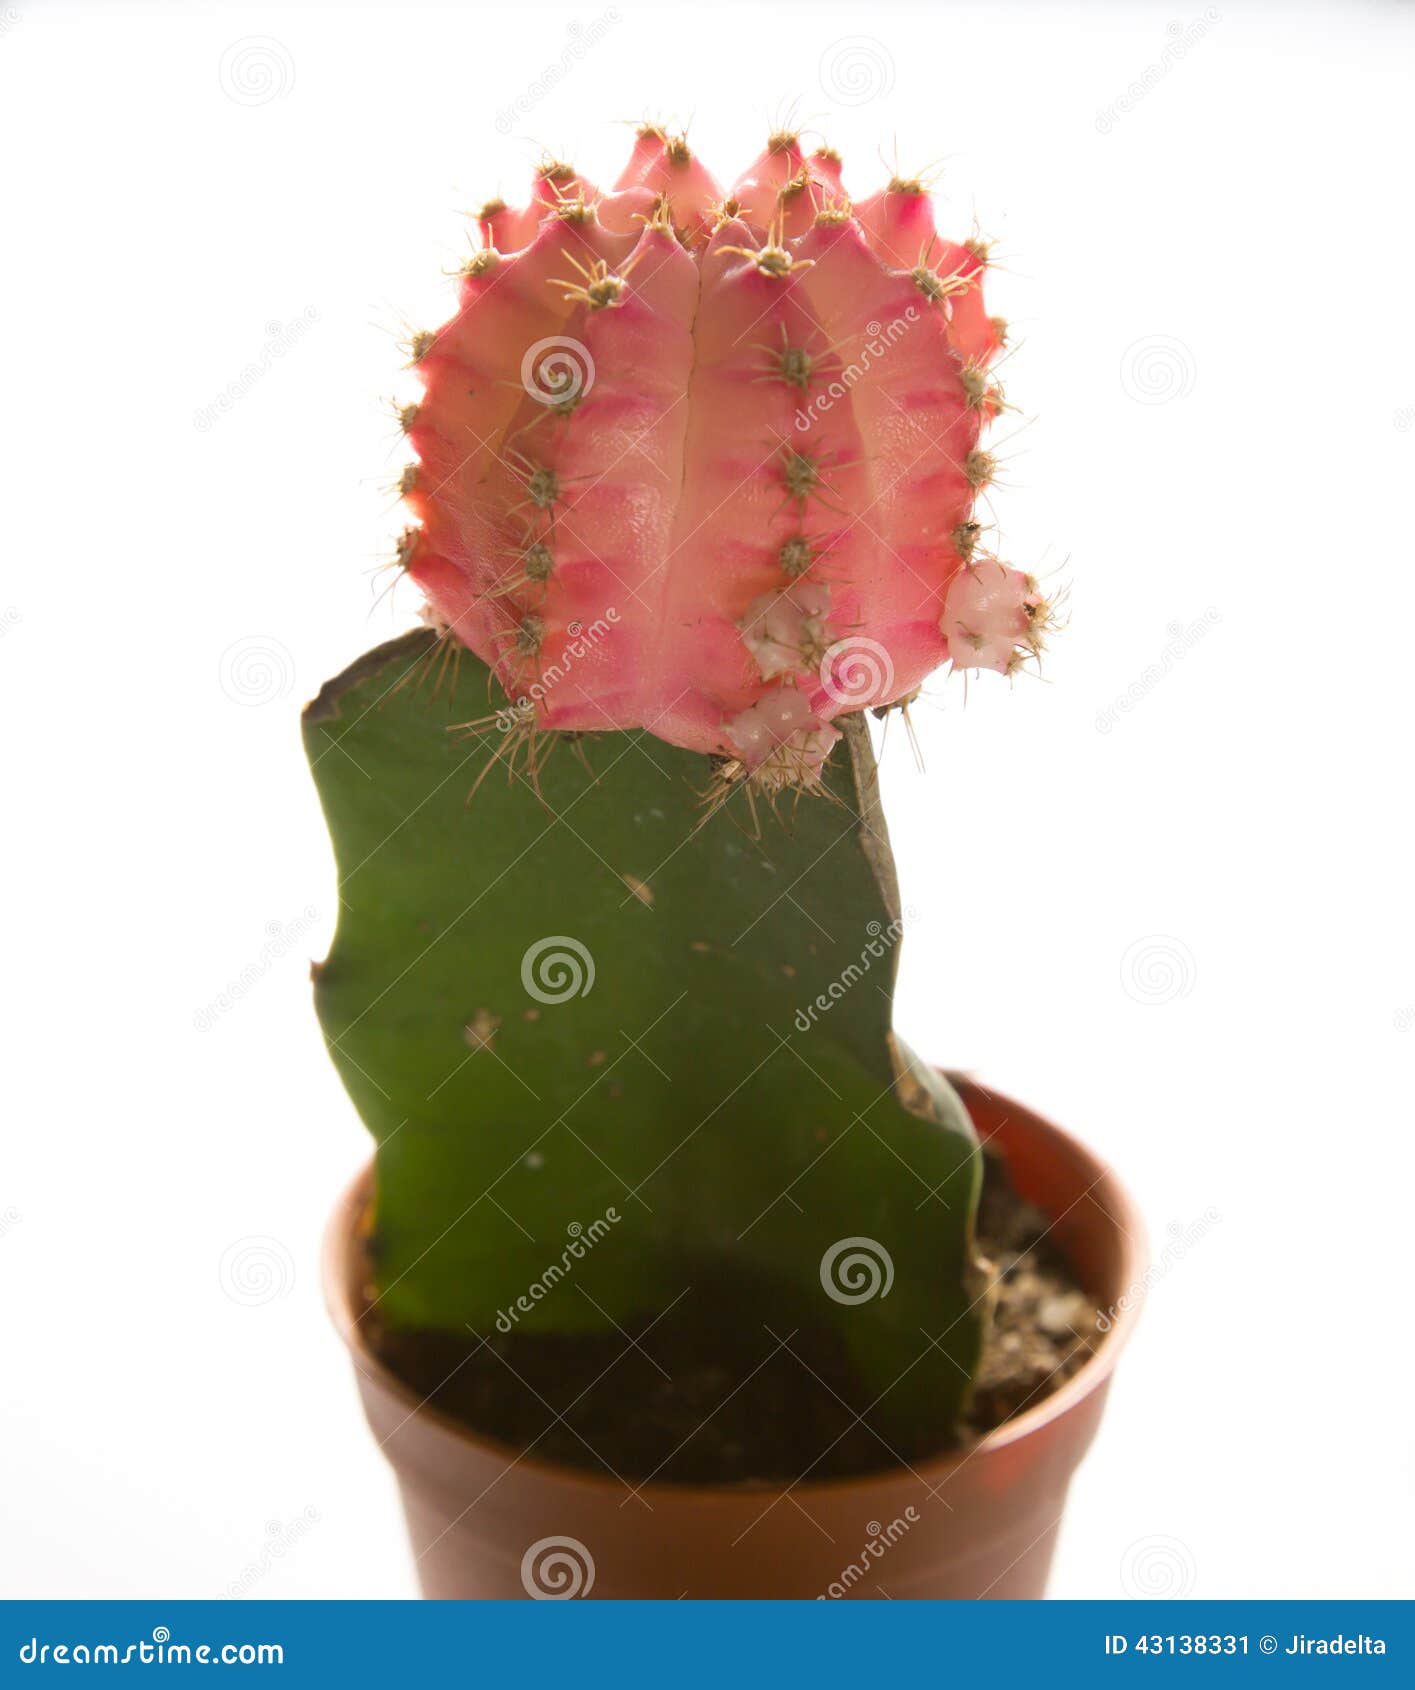 interieur provincie ga sightseeing Roze Cactus in Pot stock afbeelding. Image of scherp - 43138331